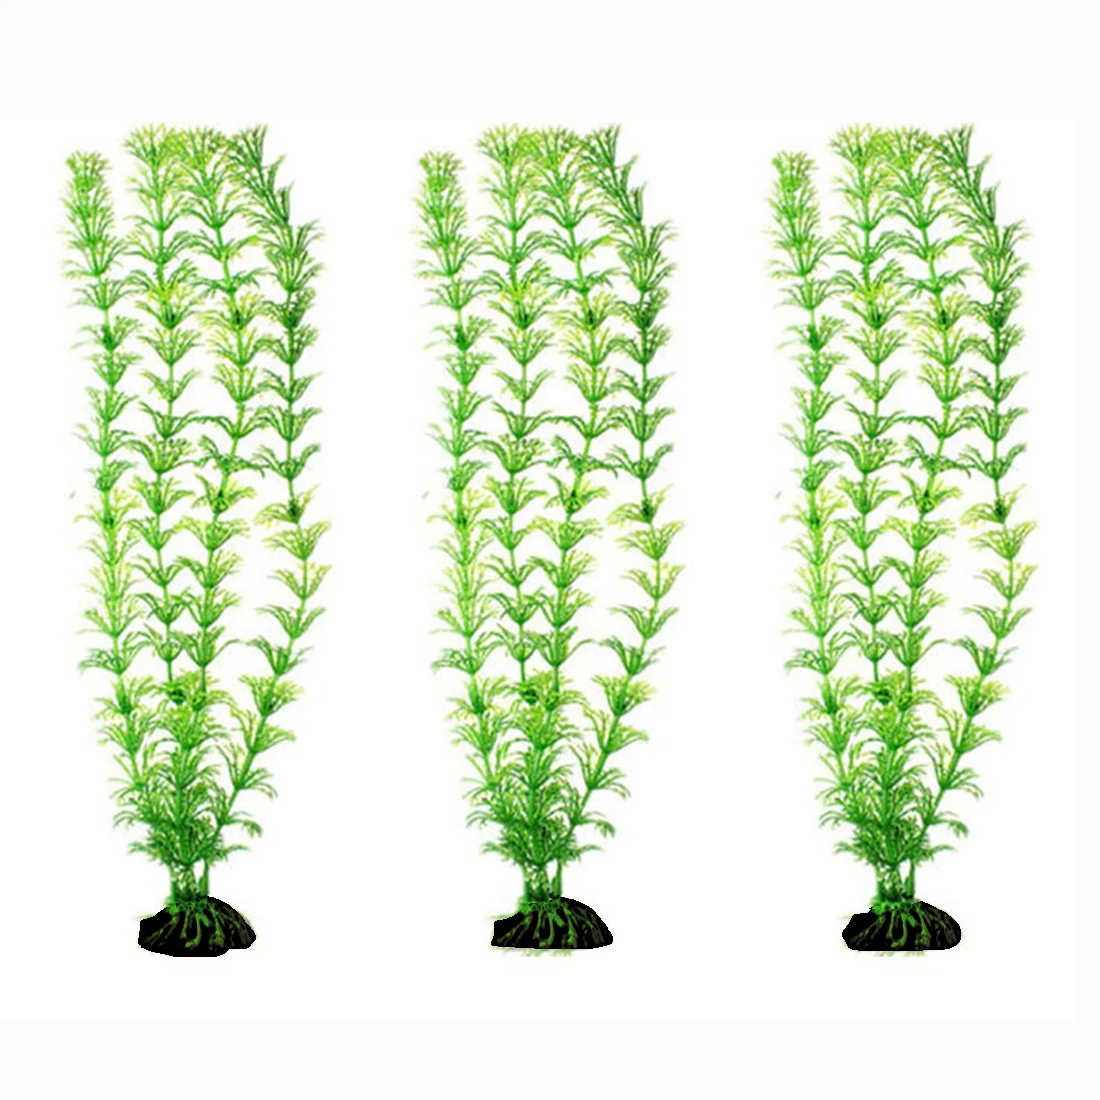 Искусственные зеленые горшечные растения трава для украшения растения пластик для аквариума декор